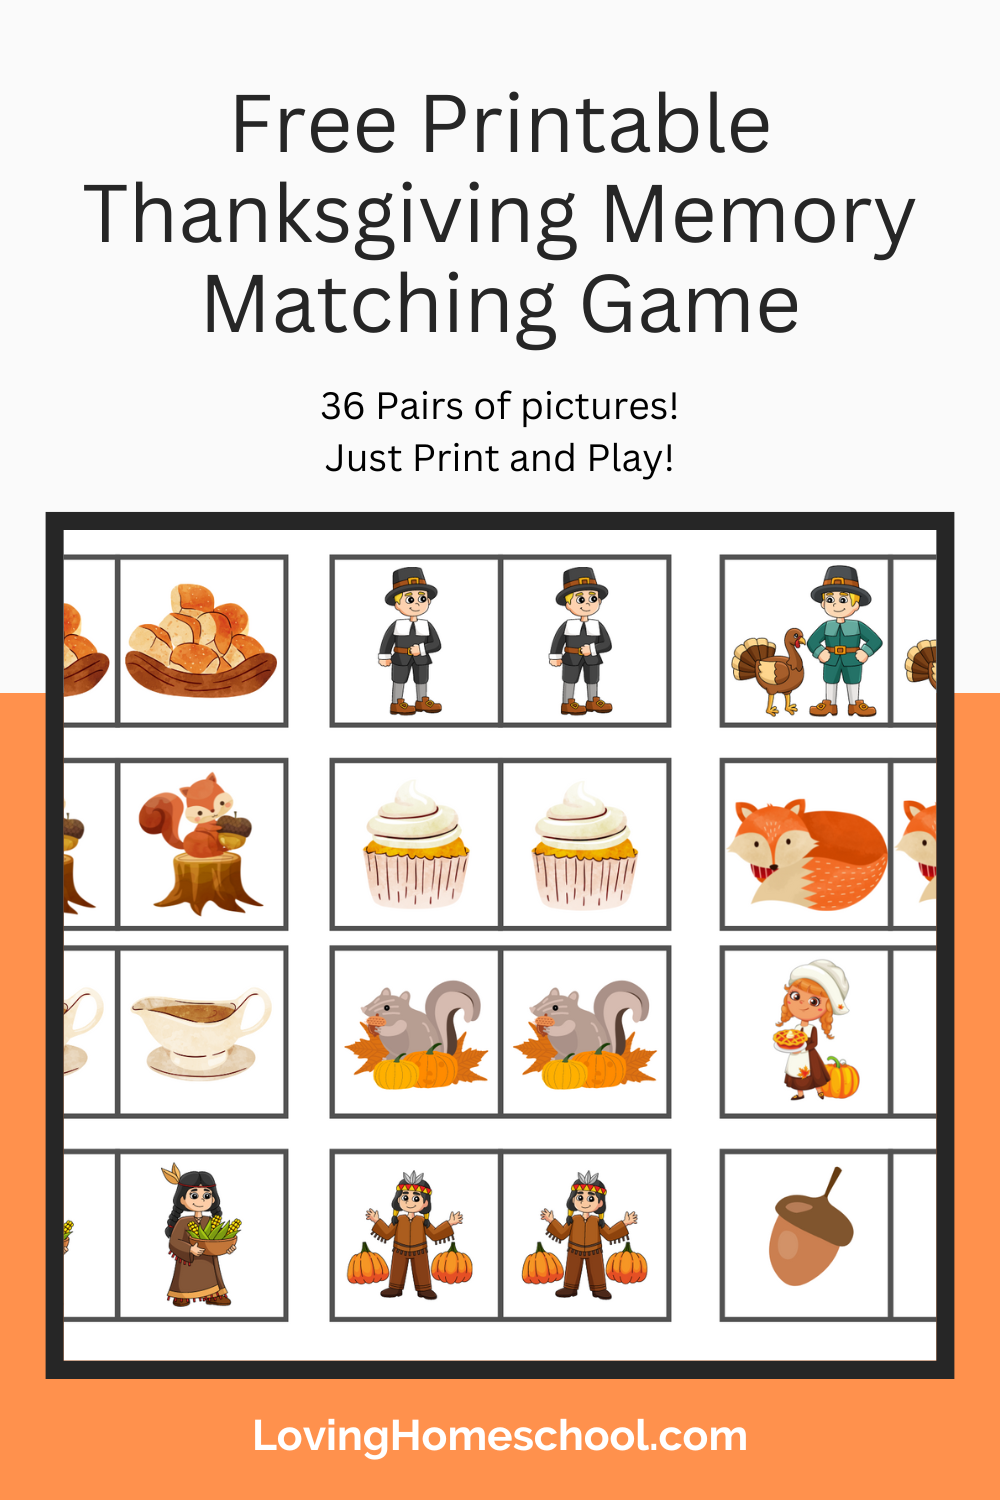 Free Printable Thanksgiving Memory Matching Game Pinterest Pin